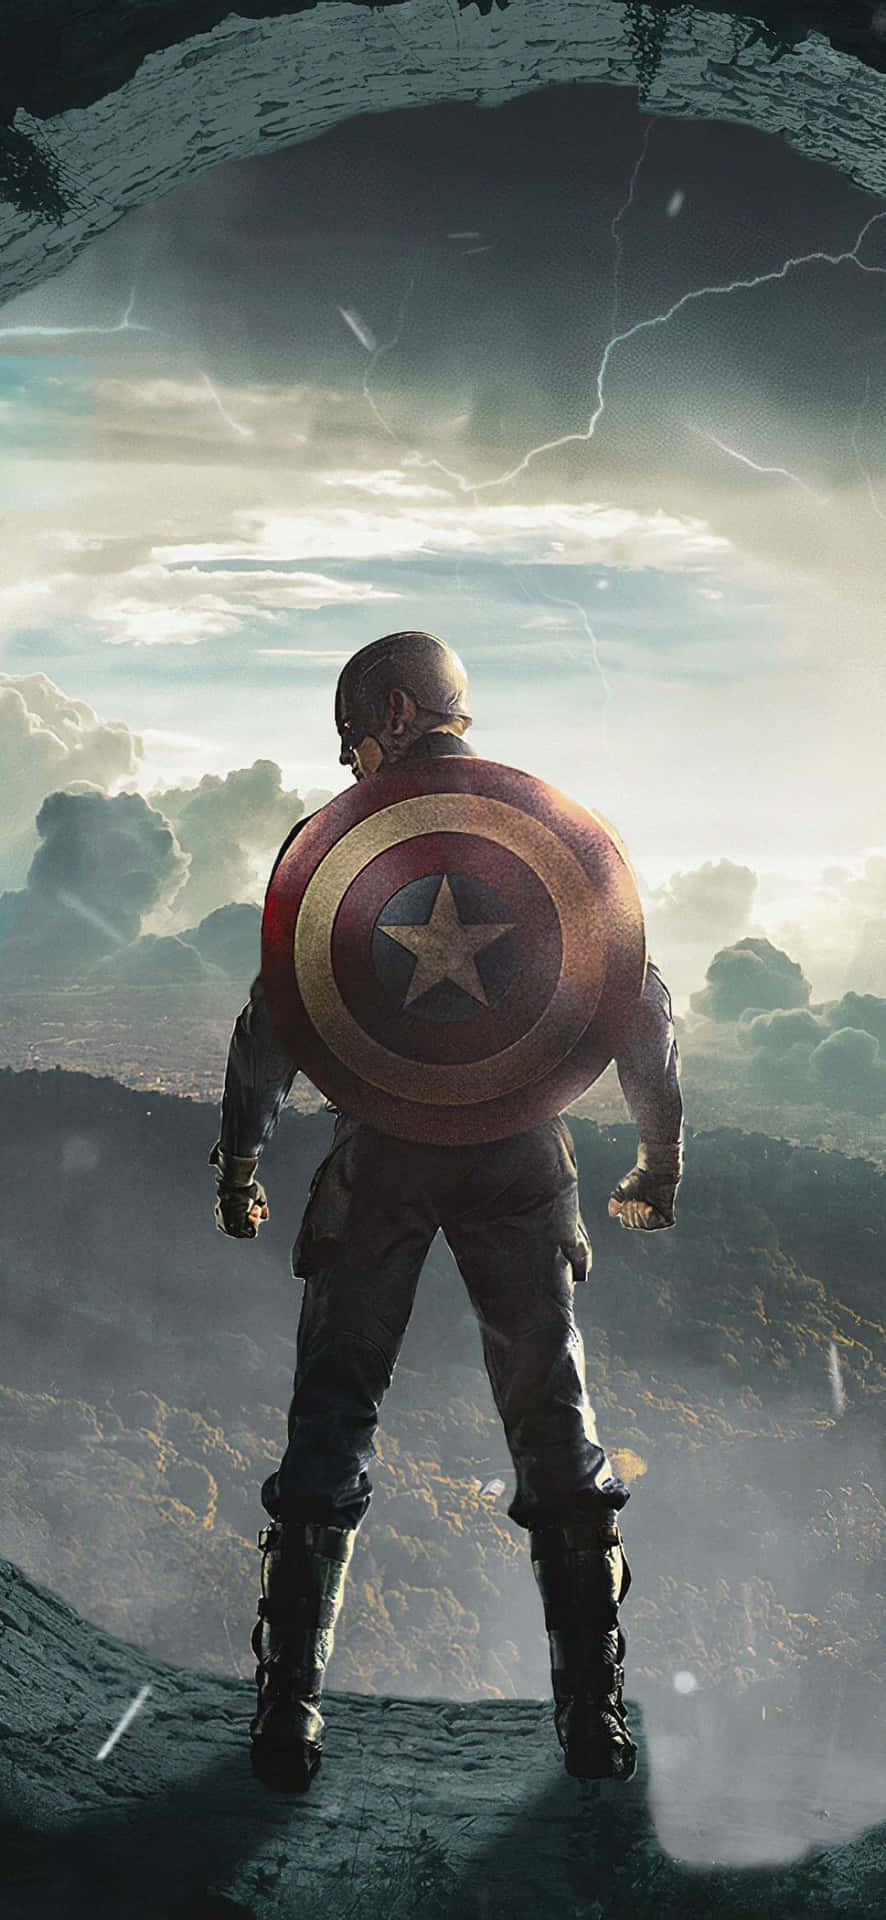 Chris Evans som Captain America, stjerne i Marvel Studios' Cinematic Universe, dekorerer denne wallpaper. Wallpaper